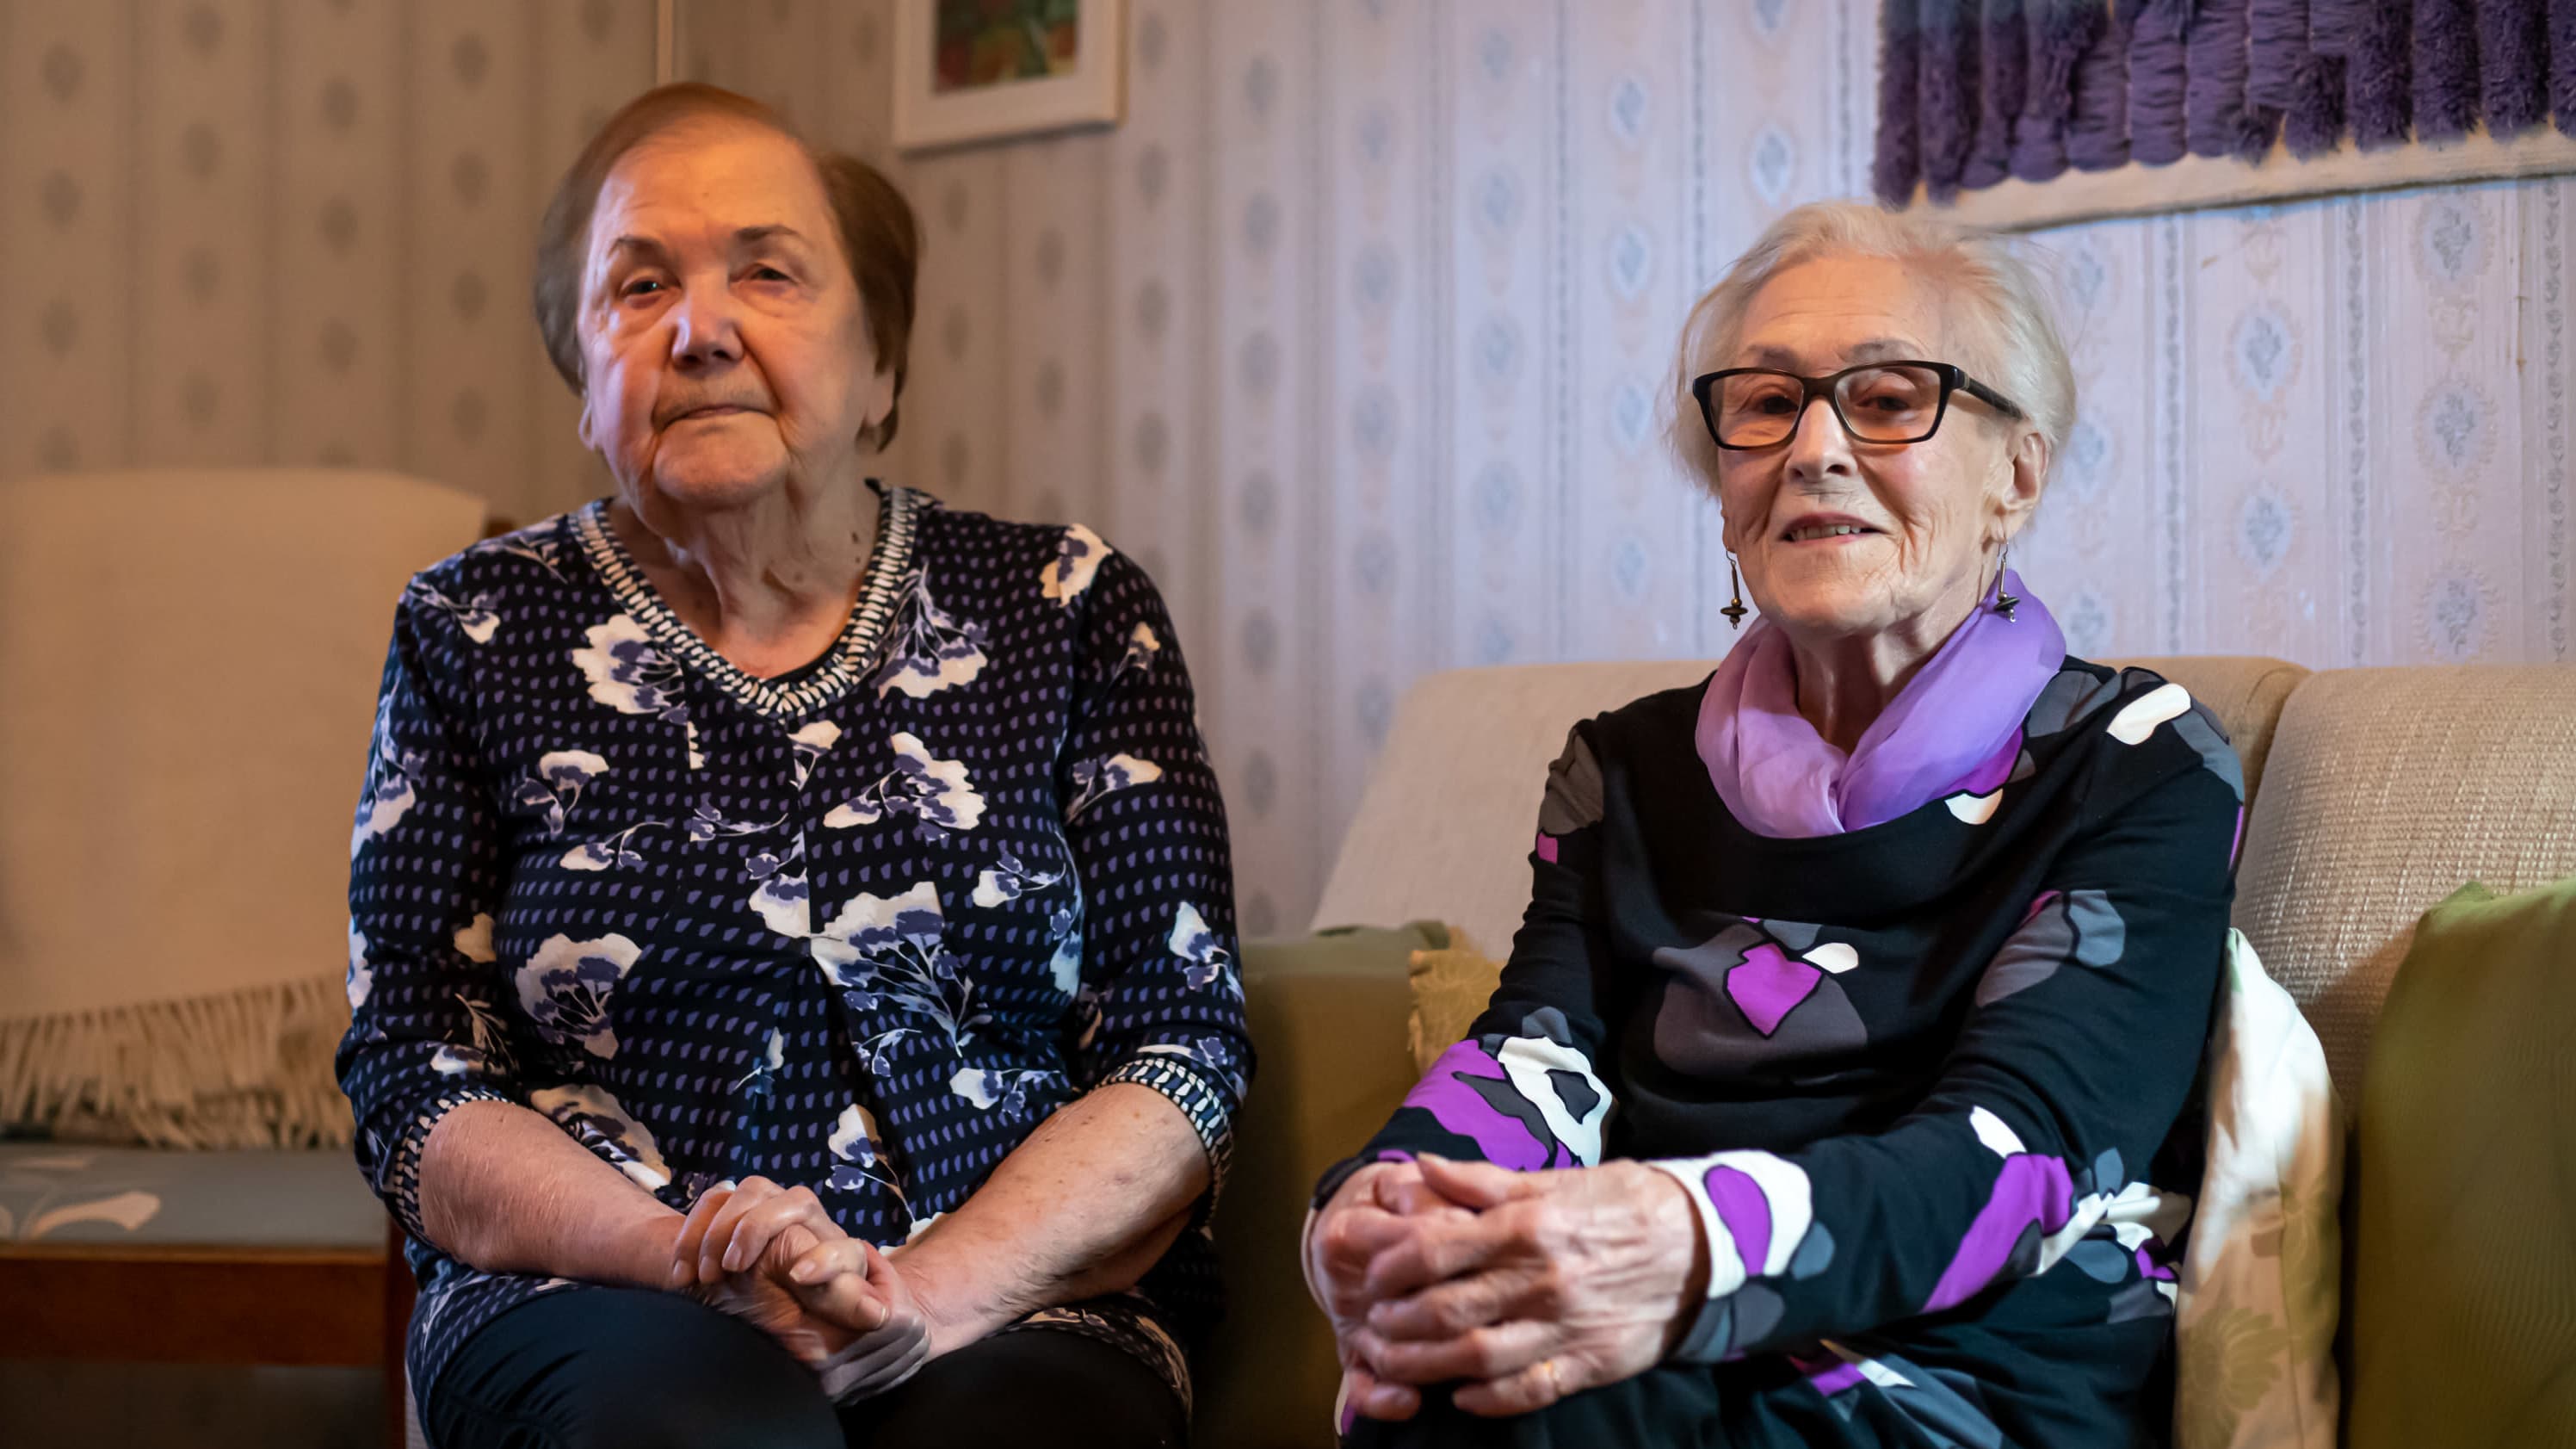 Kaksi naista, Vuokko Koskinen ja Pirkko Lohi istuvat sohvalla. He toimivat pikkulottina talvisodan aikana.